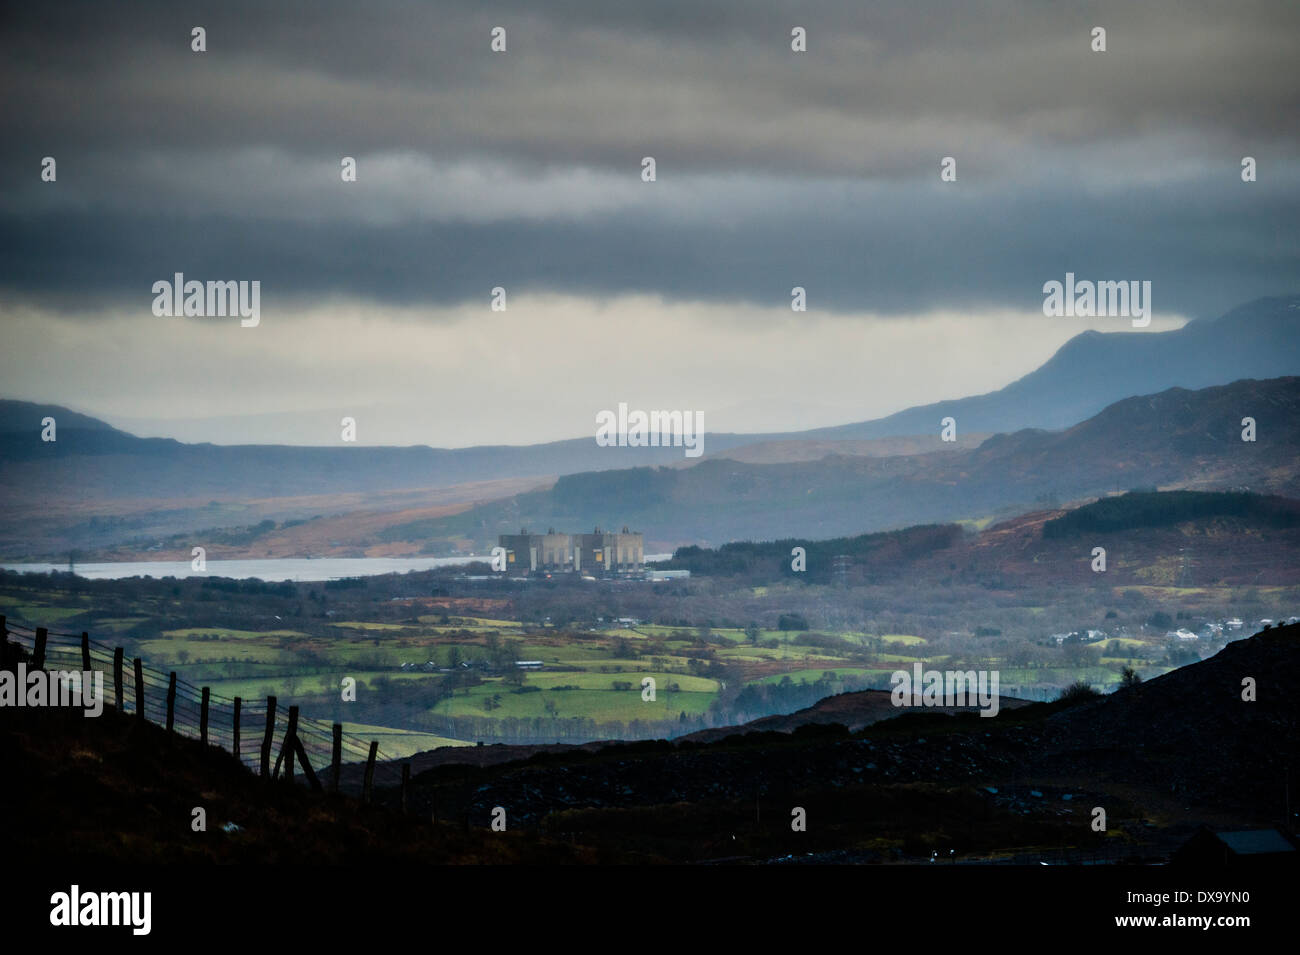 The decommissioned Trawsfynydd nuclear power station seen from Blaenau Ffestiniog, Snowdonia, Gwynedd, North Wales UK. Stock Photo